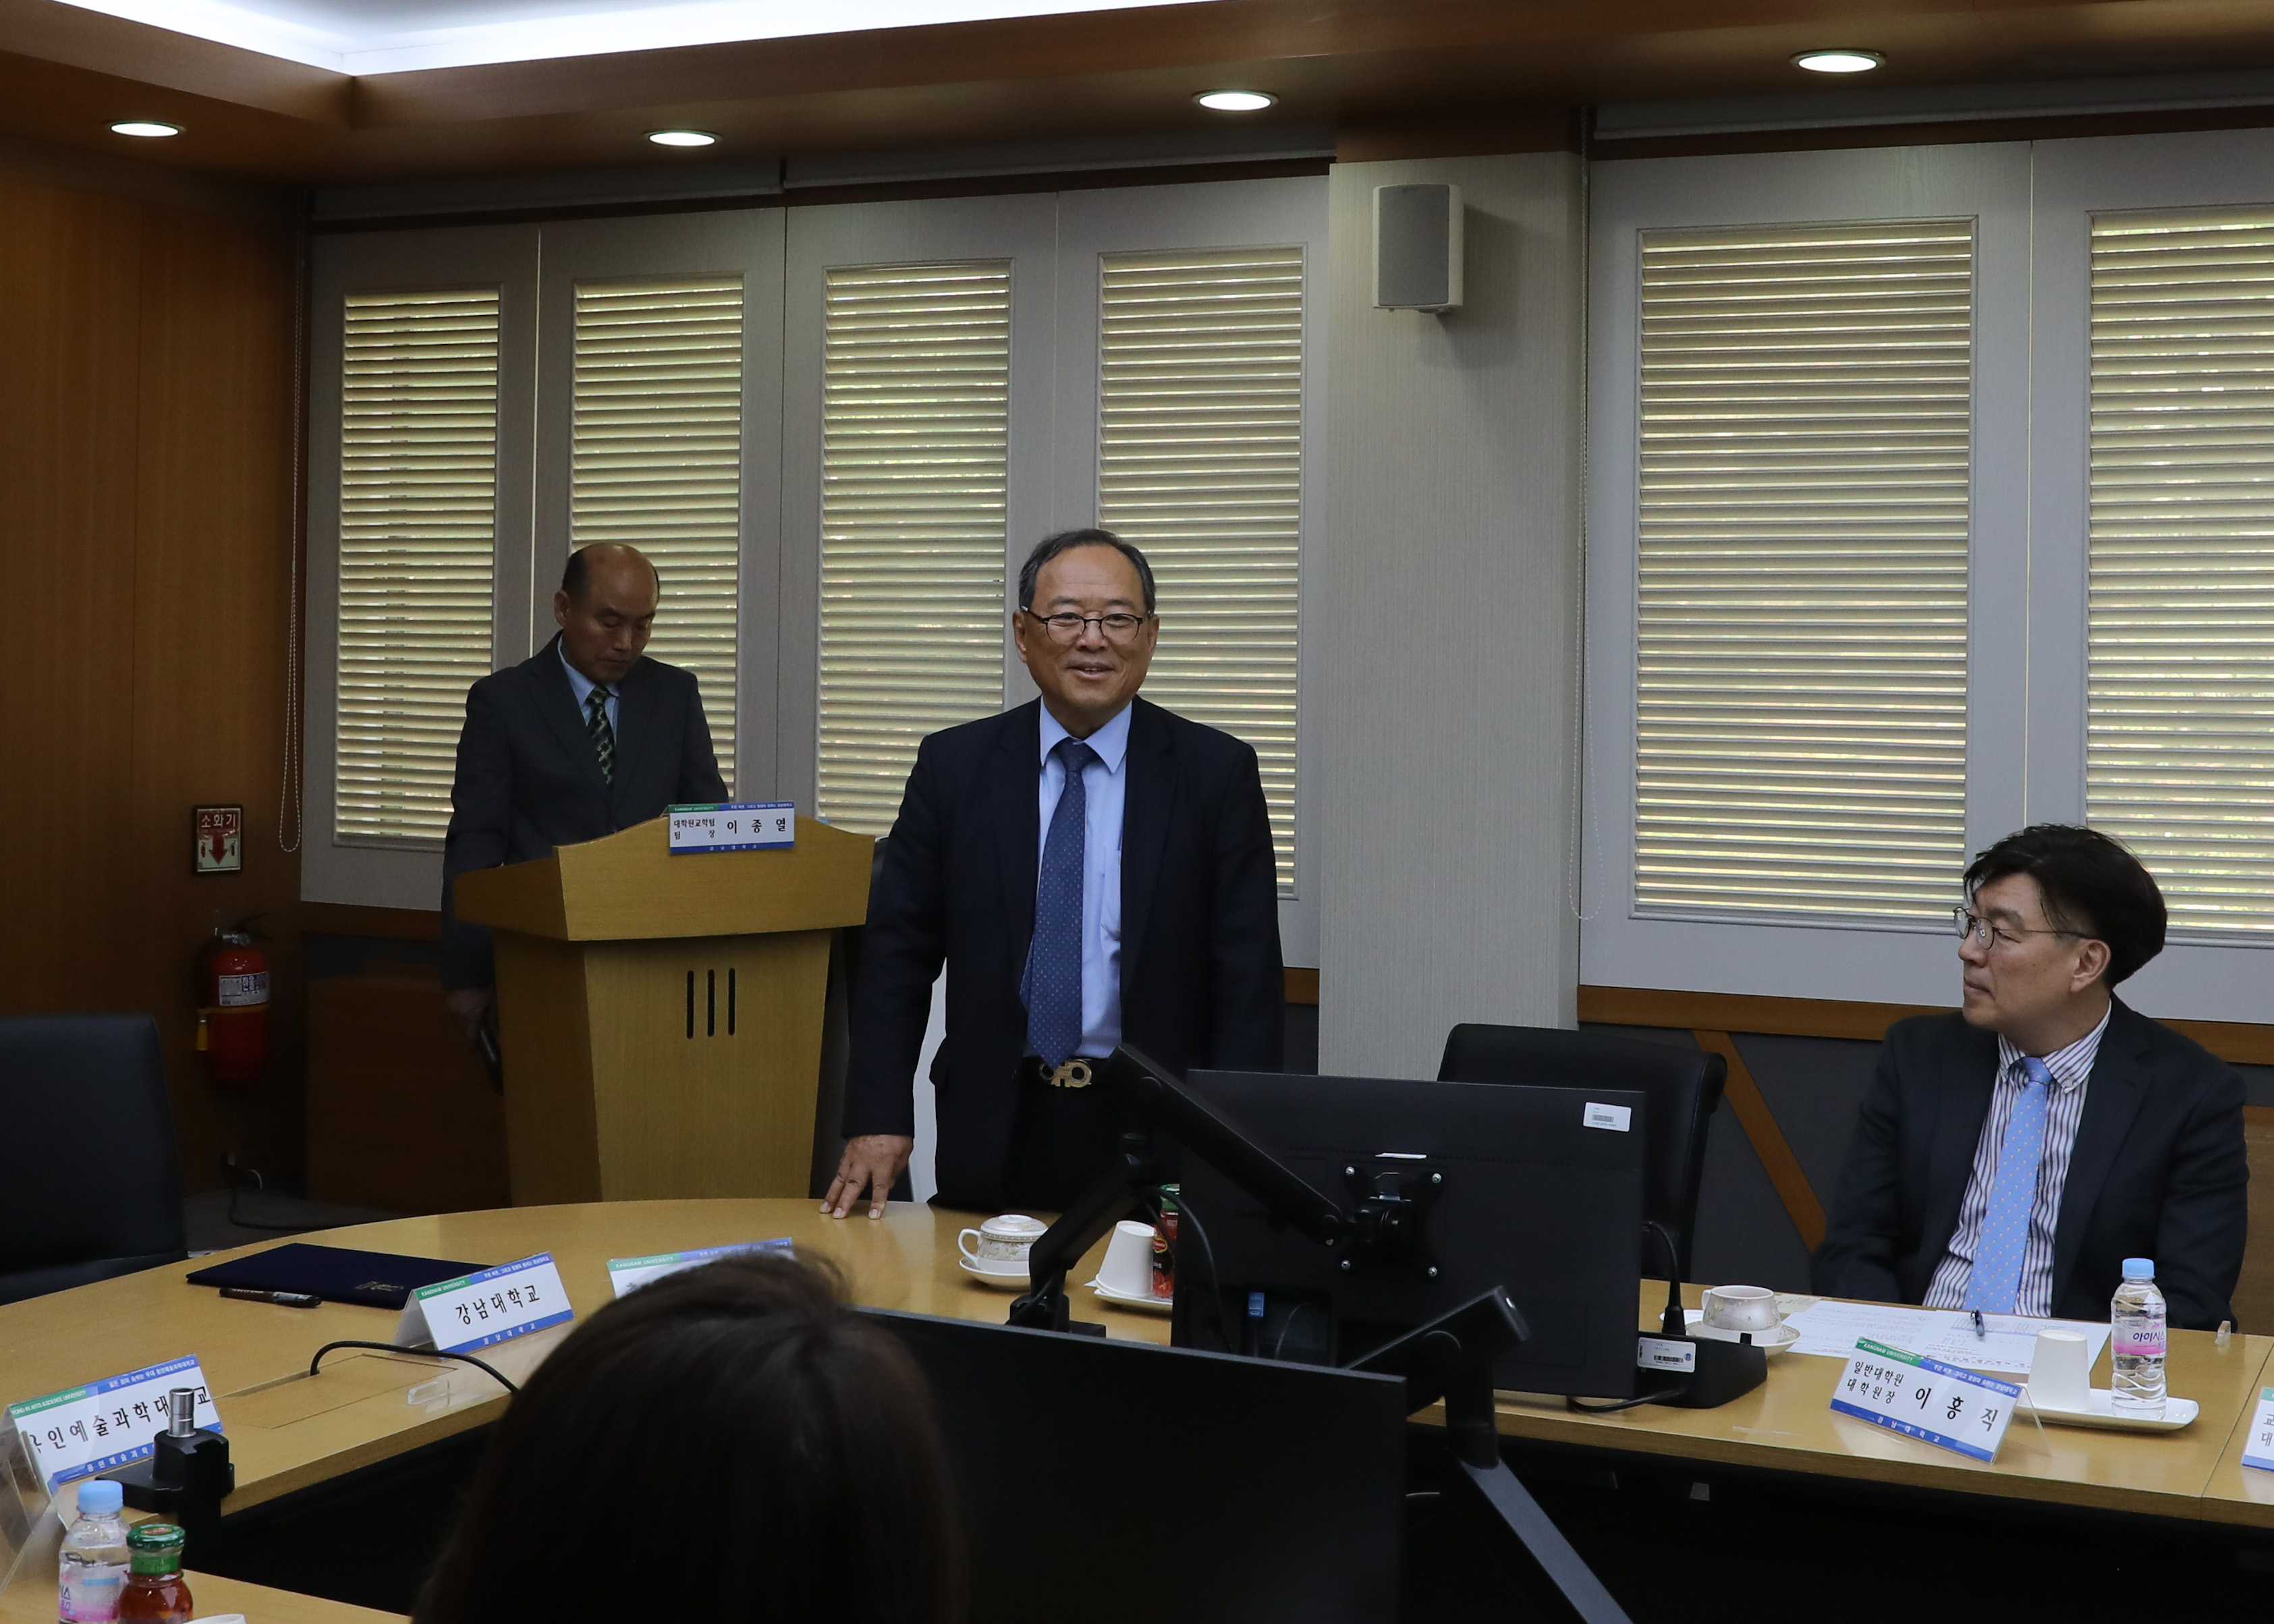 강남대학교 총장님이 발언하는 모습을 찍은 사진입니다.